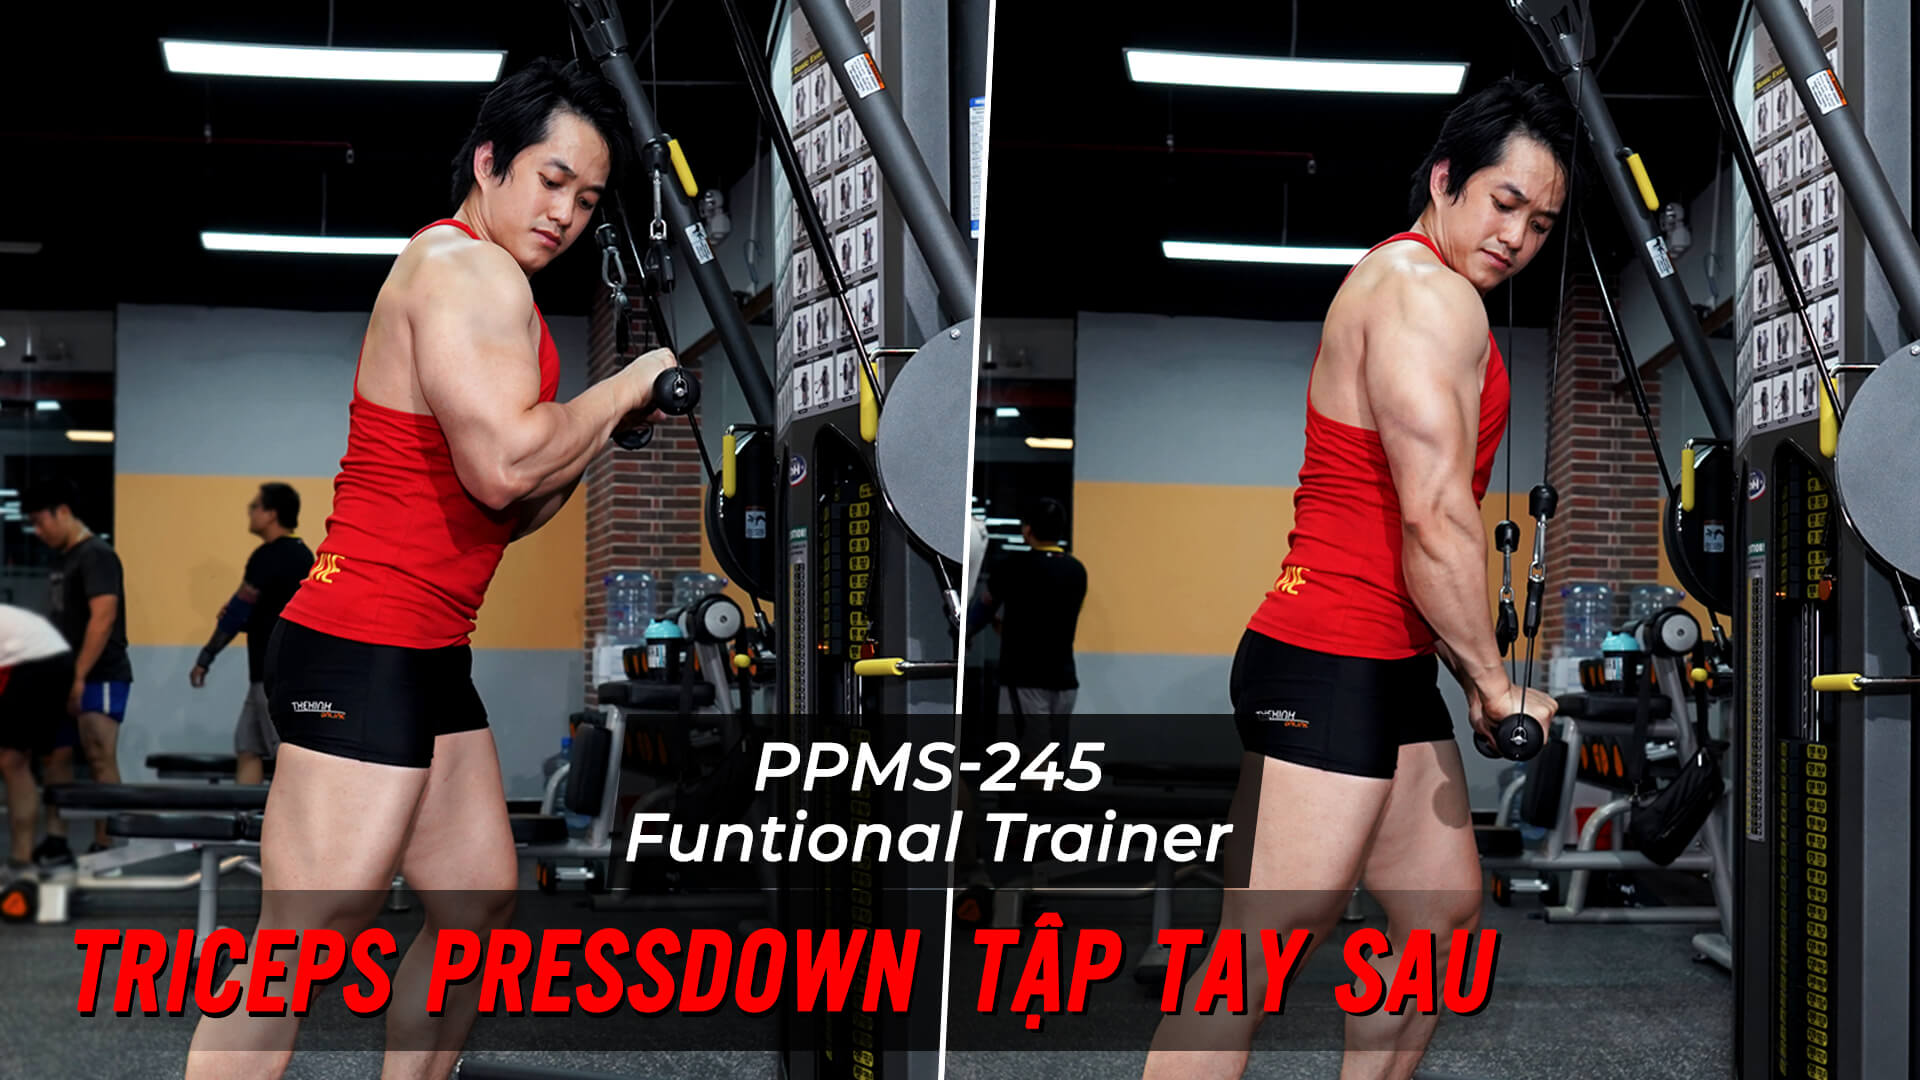 Triceps Pressdown - Bài tập giúp phát triển tay sau với Functional Trainer 